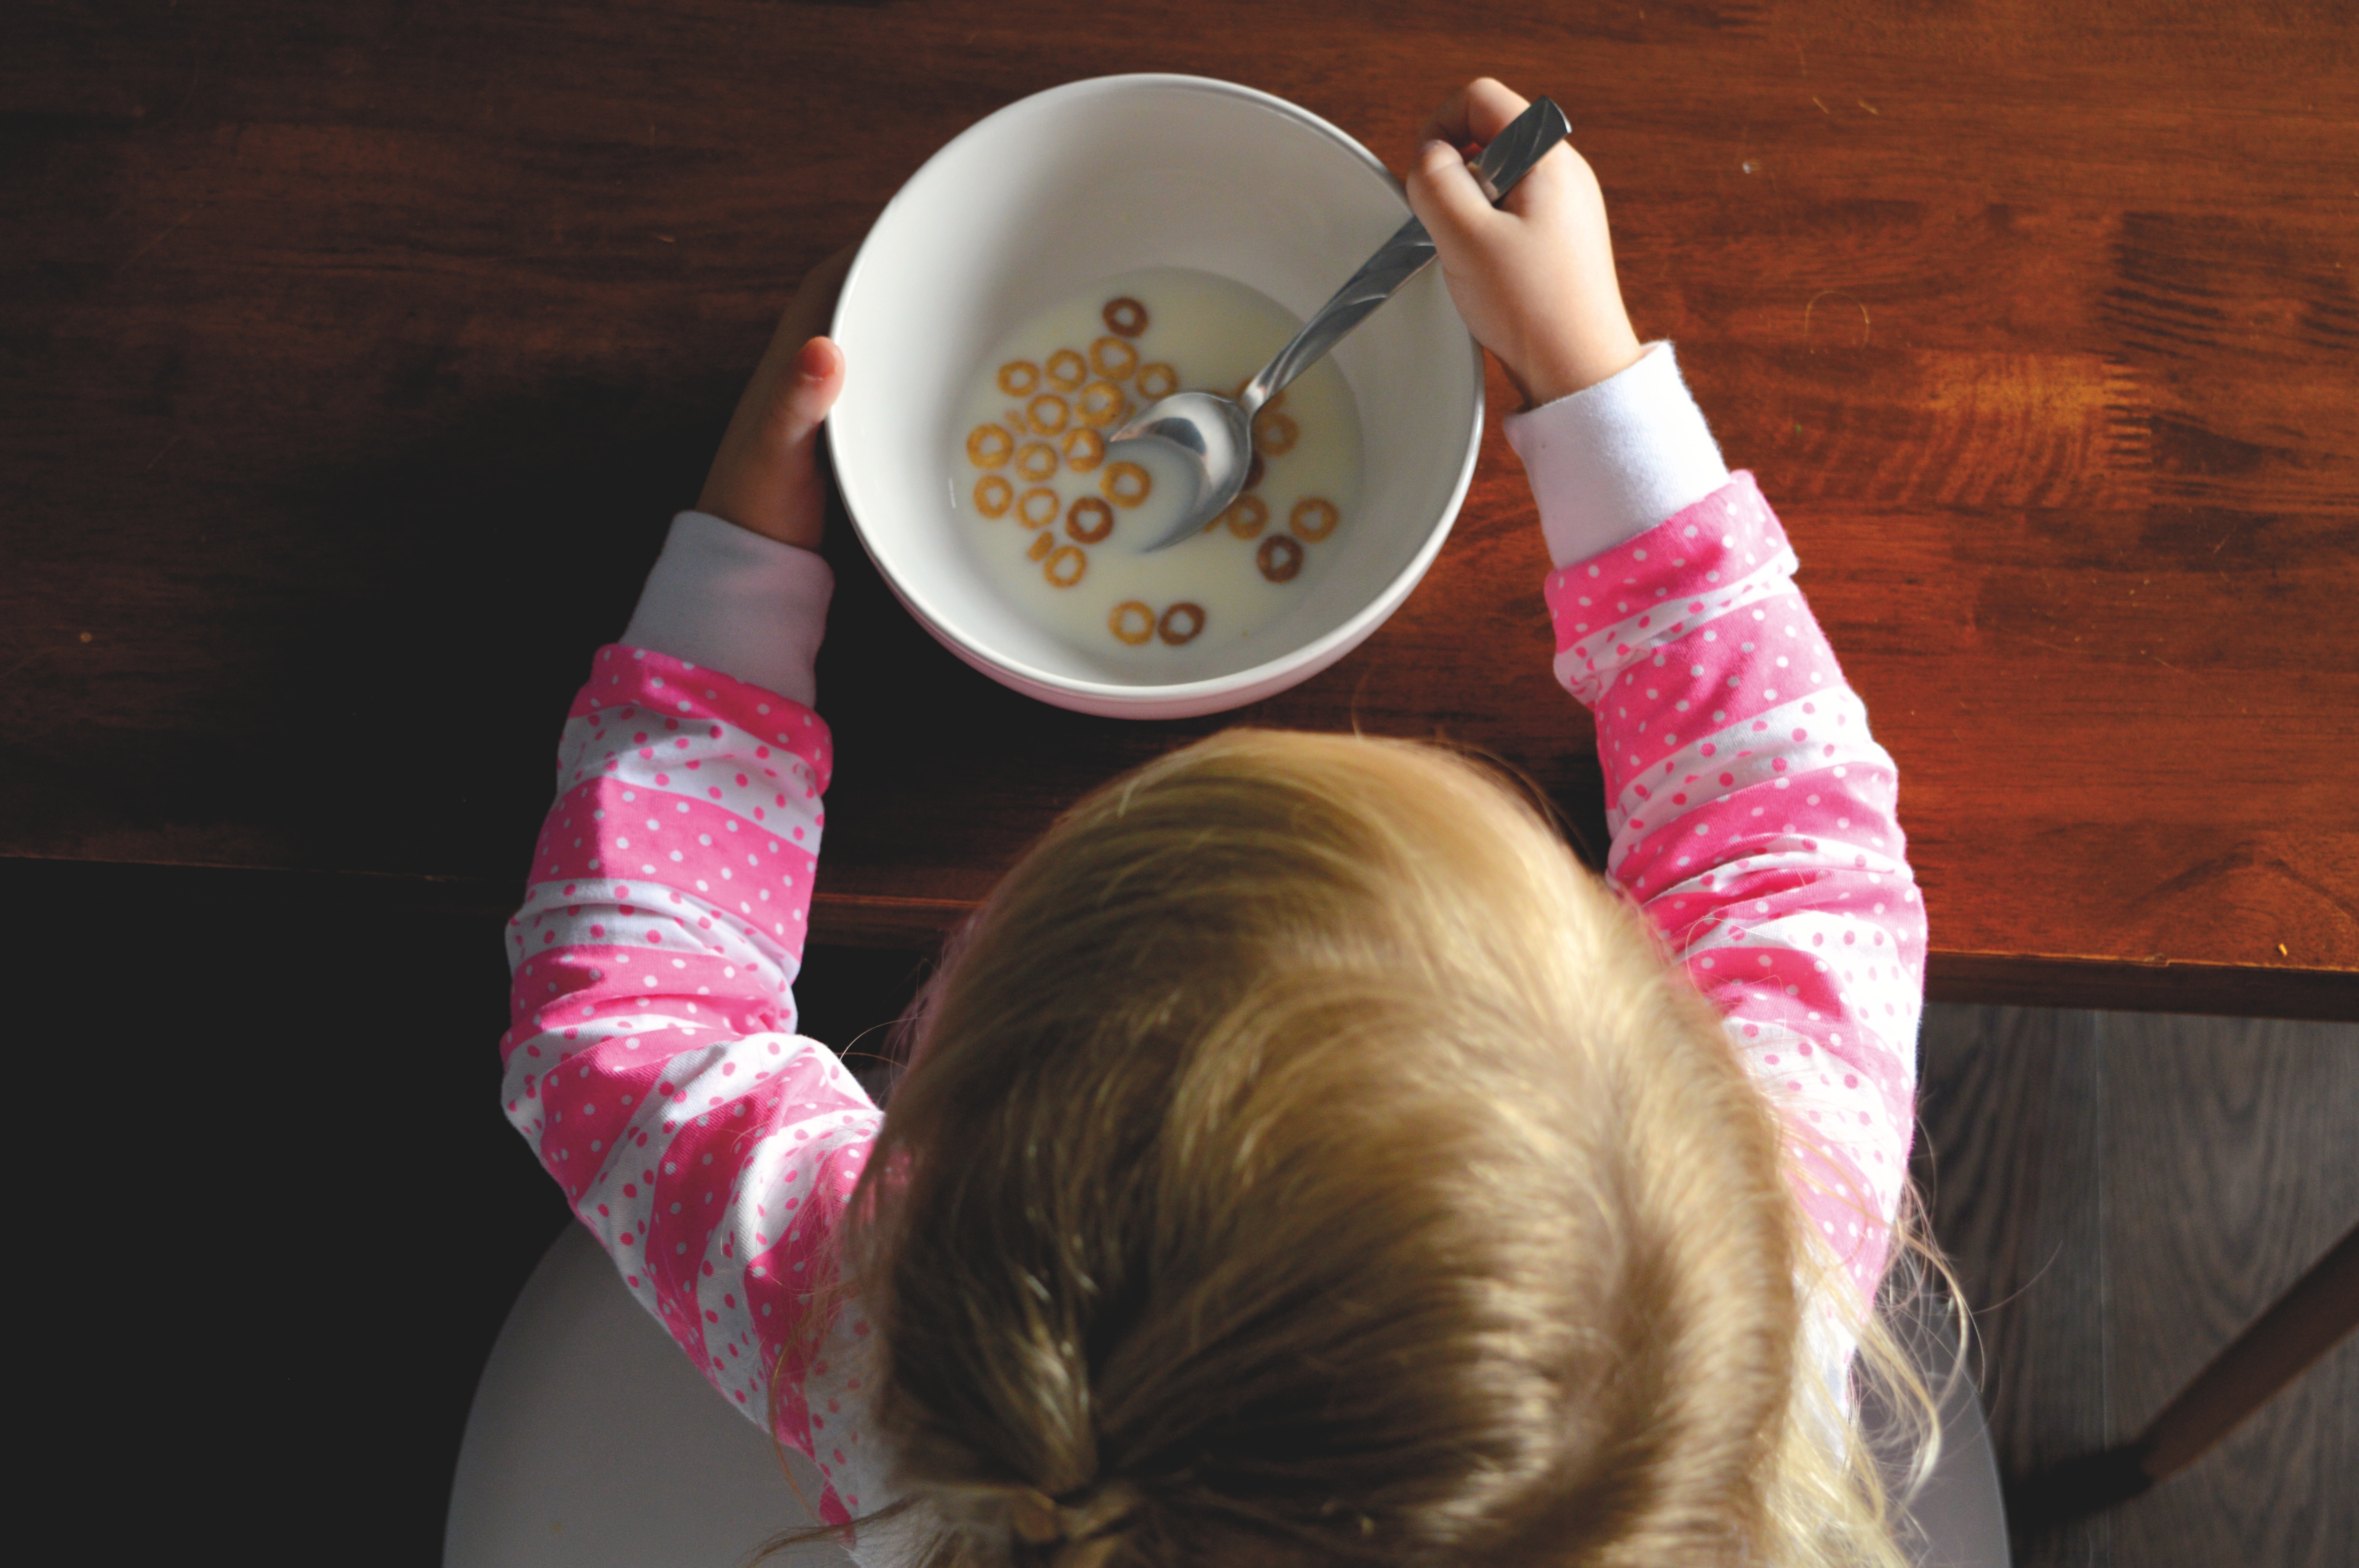 Правильная гипоаллергенная диета для детей от 1 года до 5 лет, что можно и нельзя кушать аллергикам?